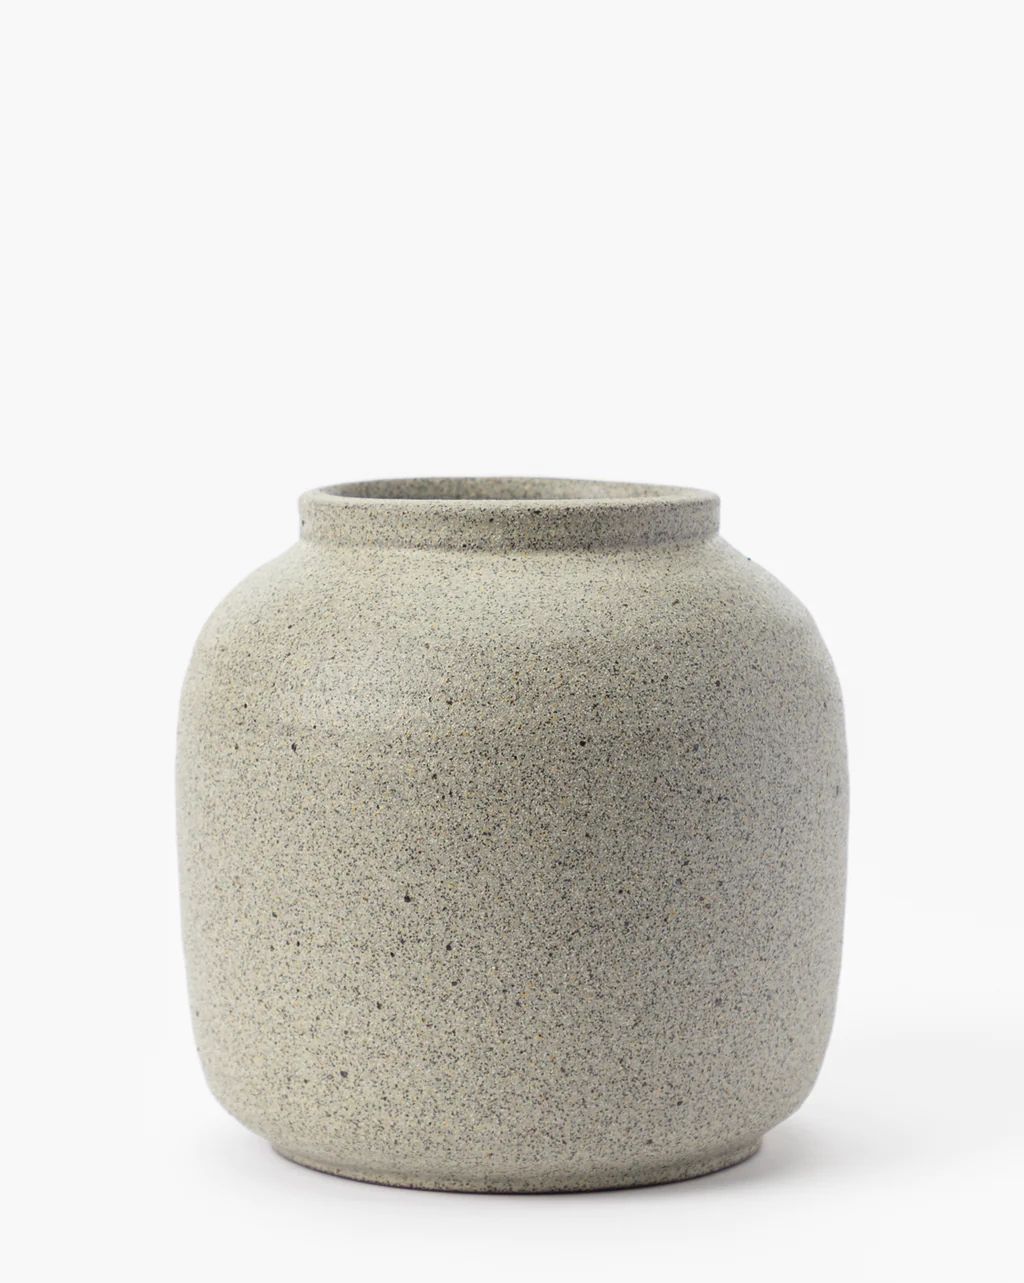 Belia Ceramic Vase | McGee & Co.